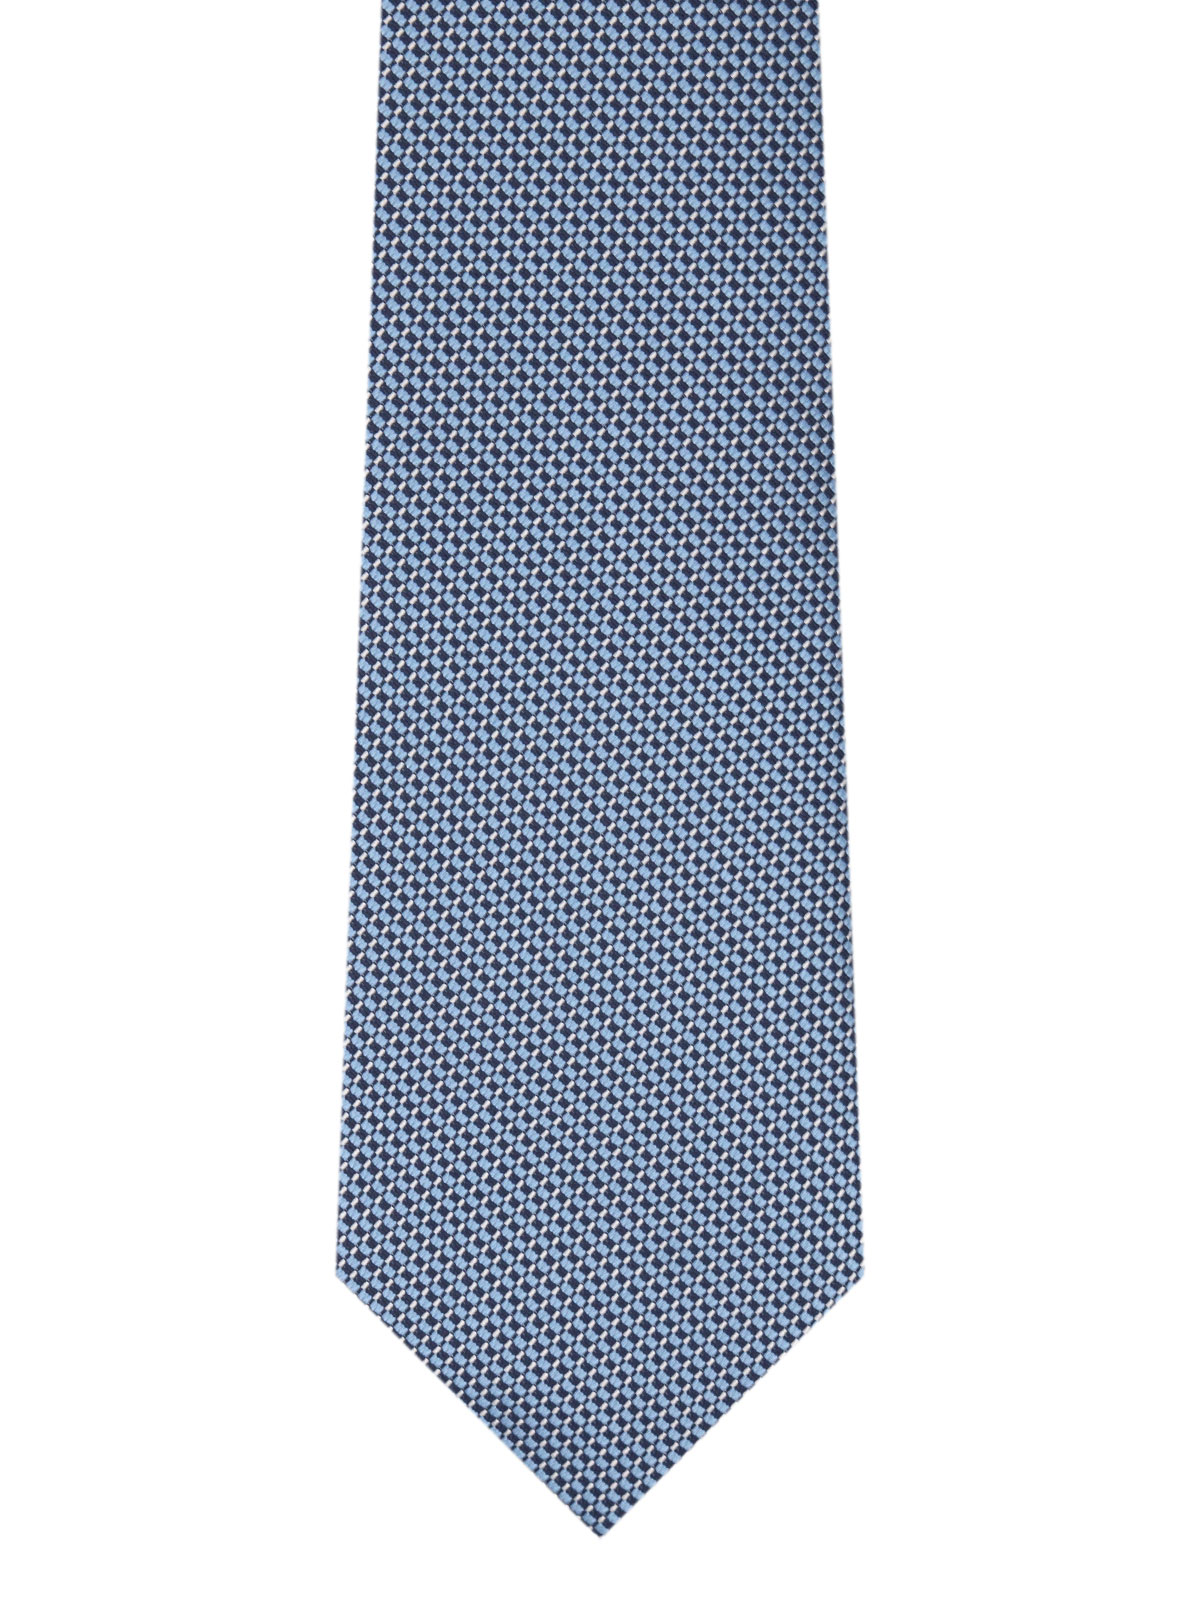 Cravată structurată în albastru - 10189 - € 14.06 img2